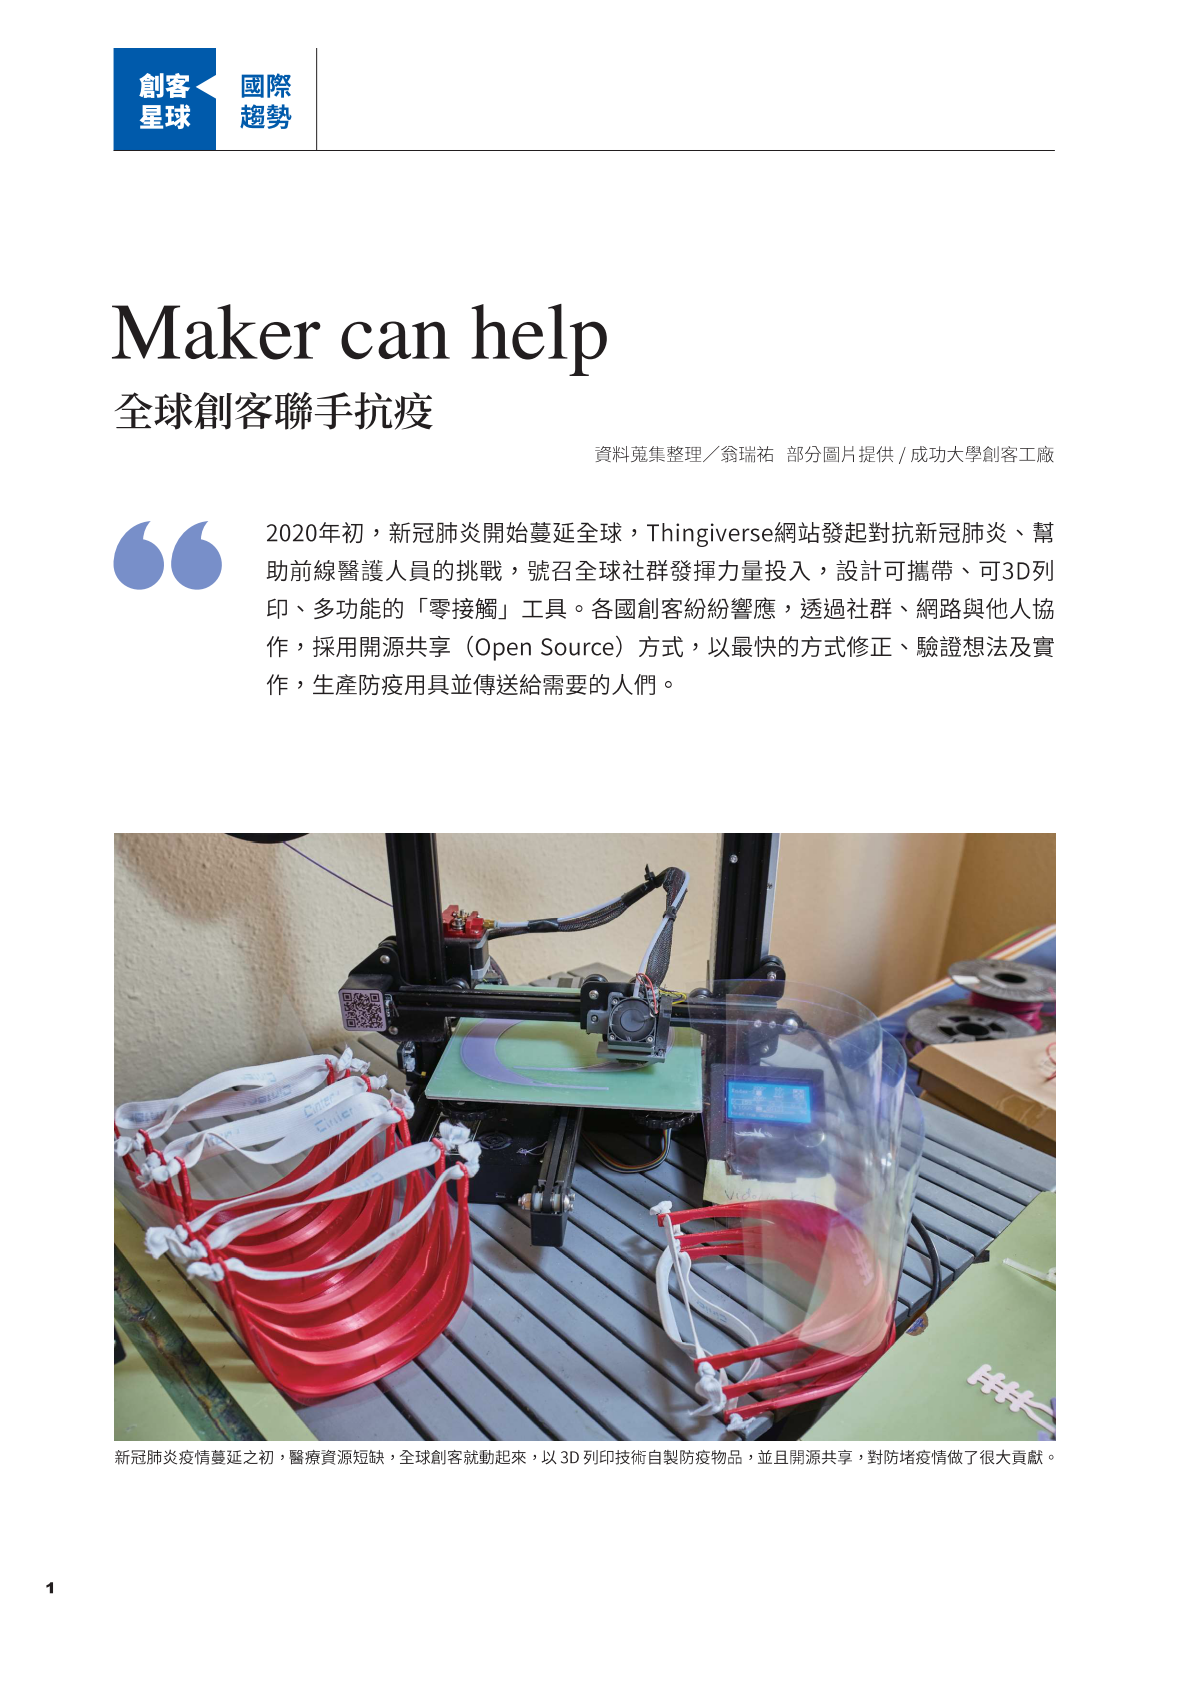 創客專題報導3-1.Maker can help